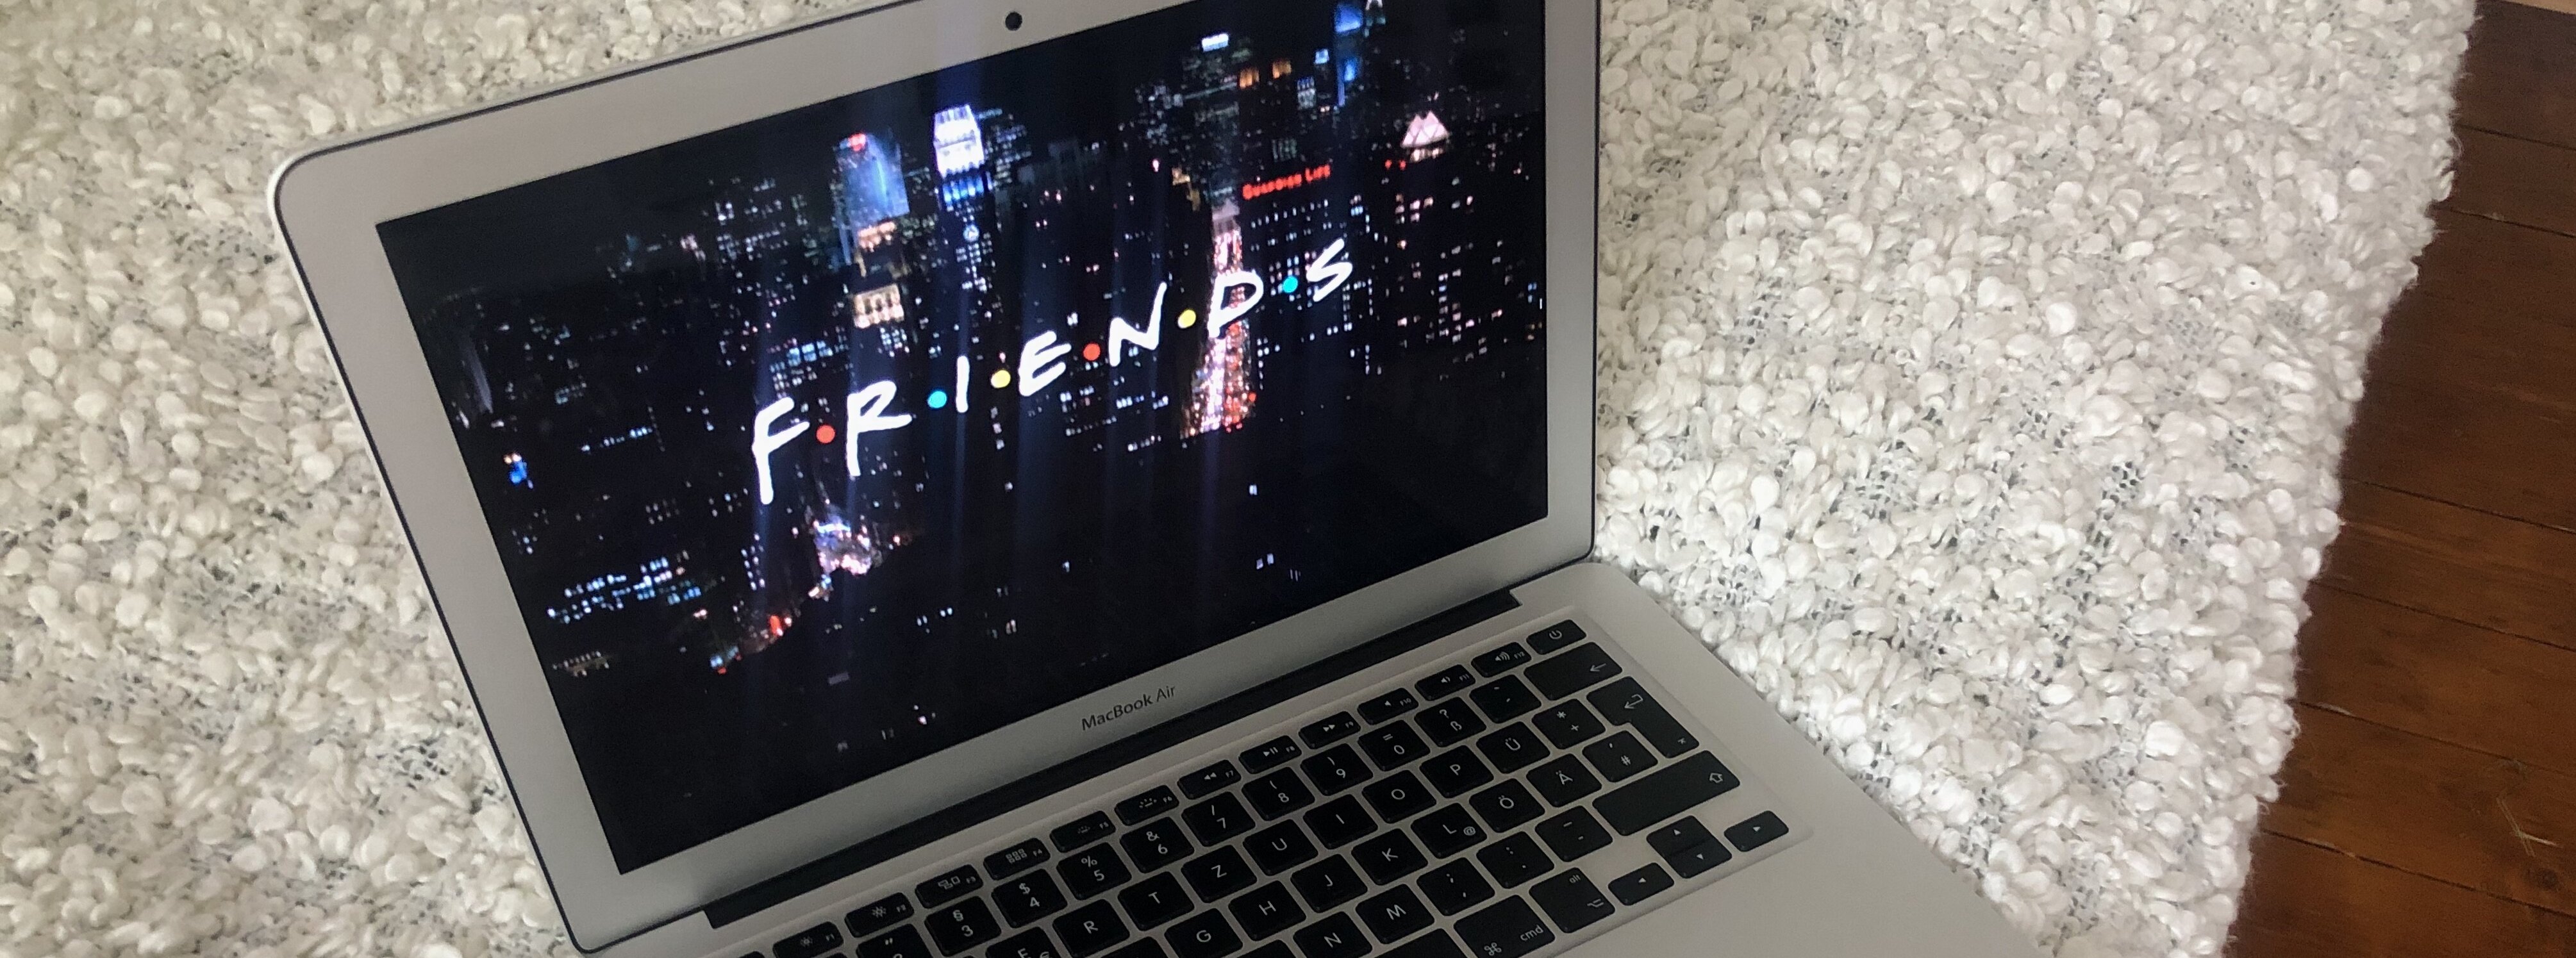 Laptopbildschirm auf dem das Logo der Serie "Friends" zu sehen ist